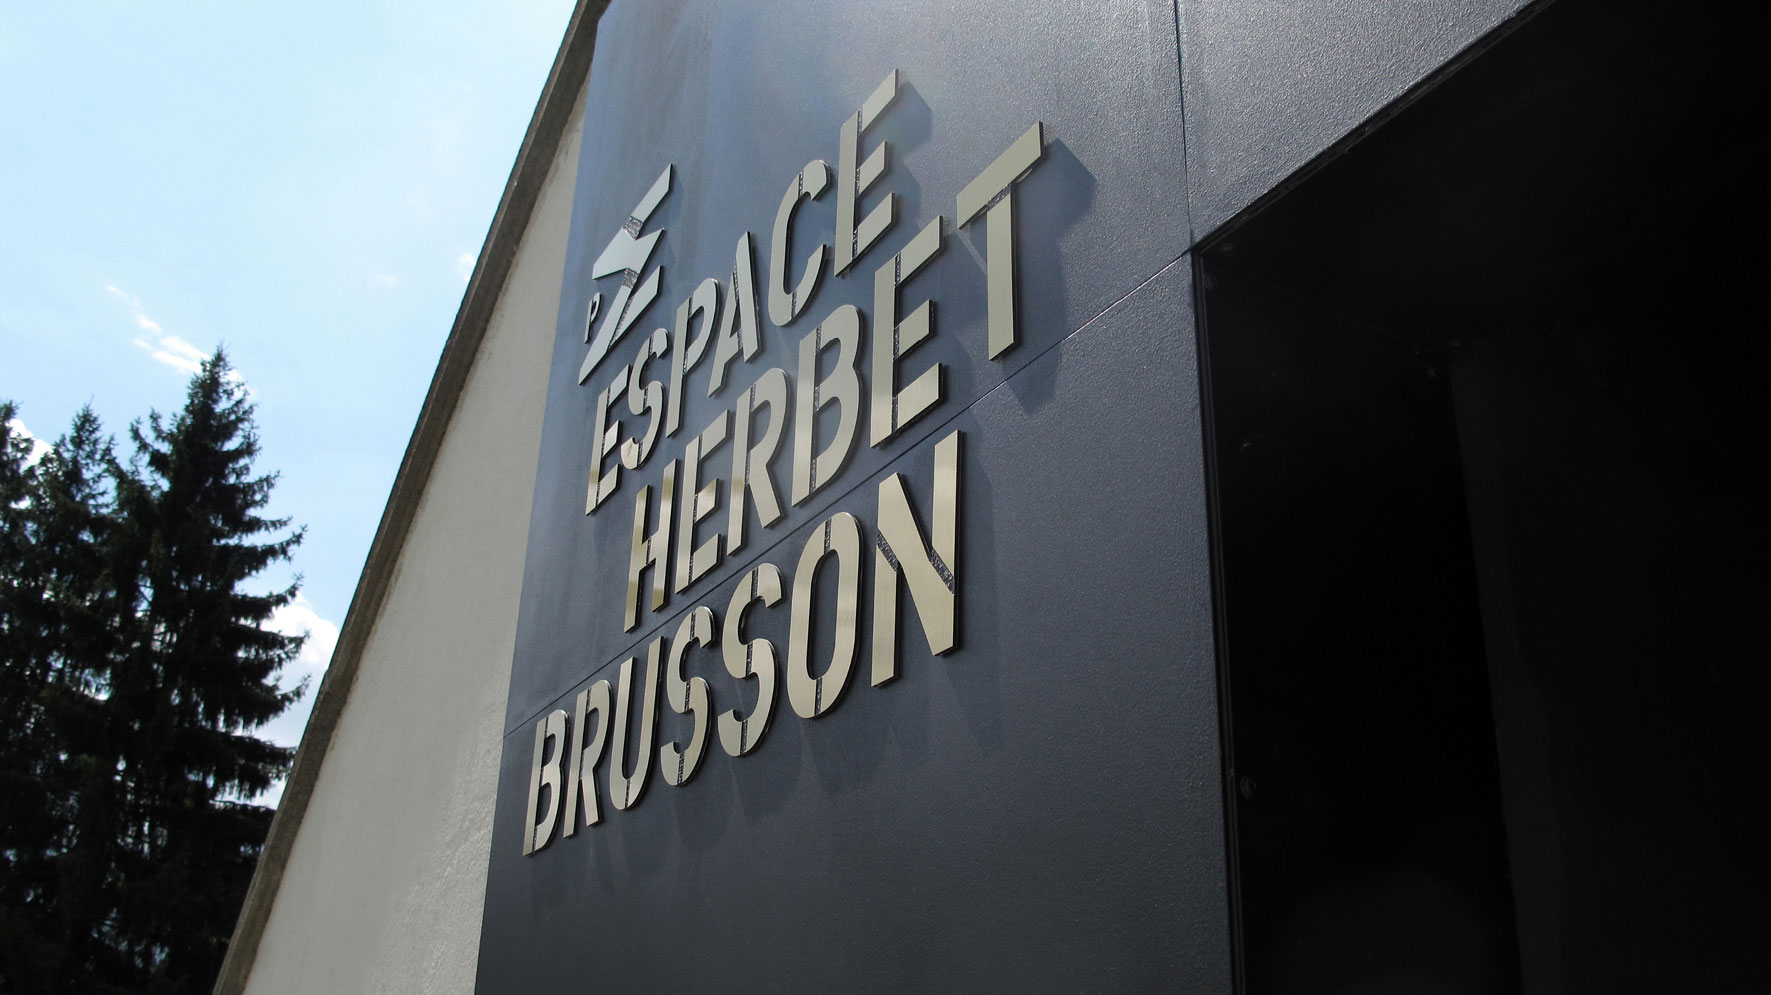 Espace Herbert Brusson